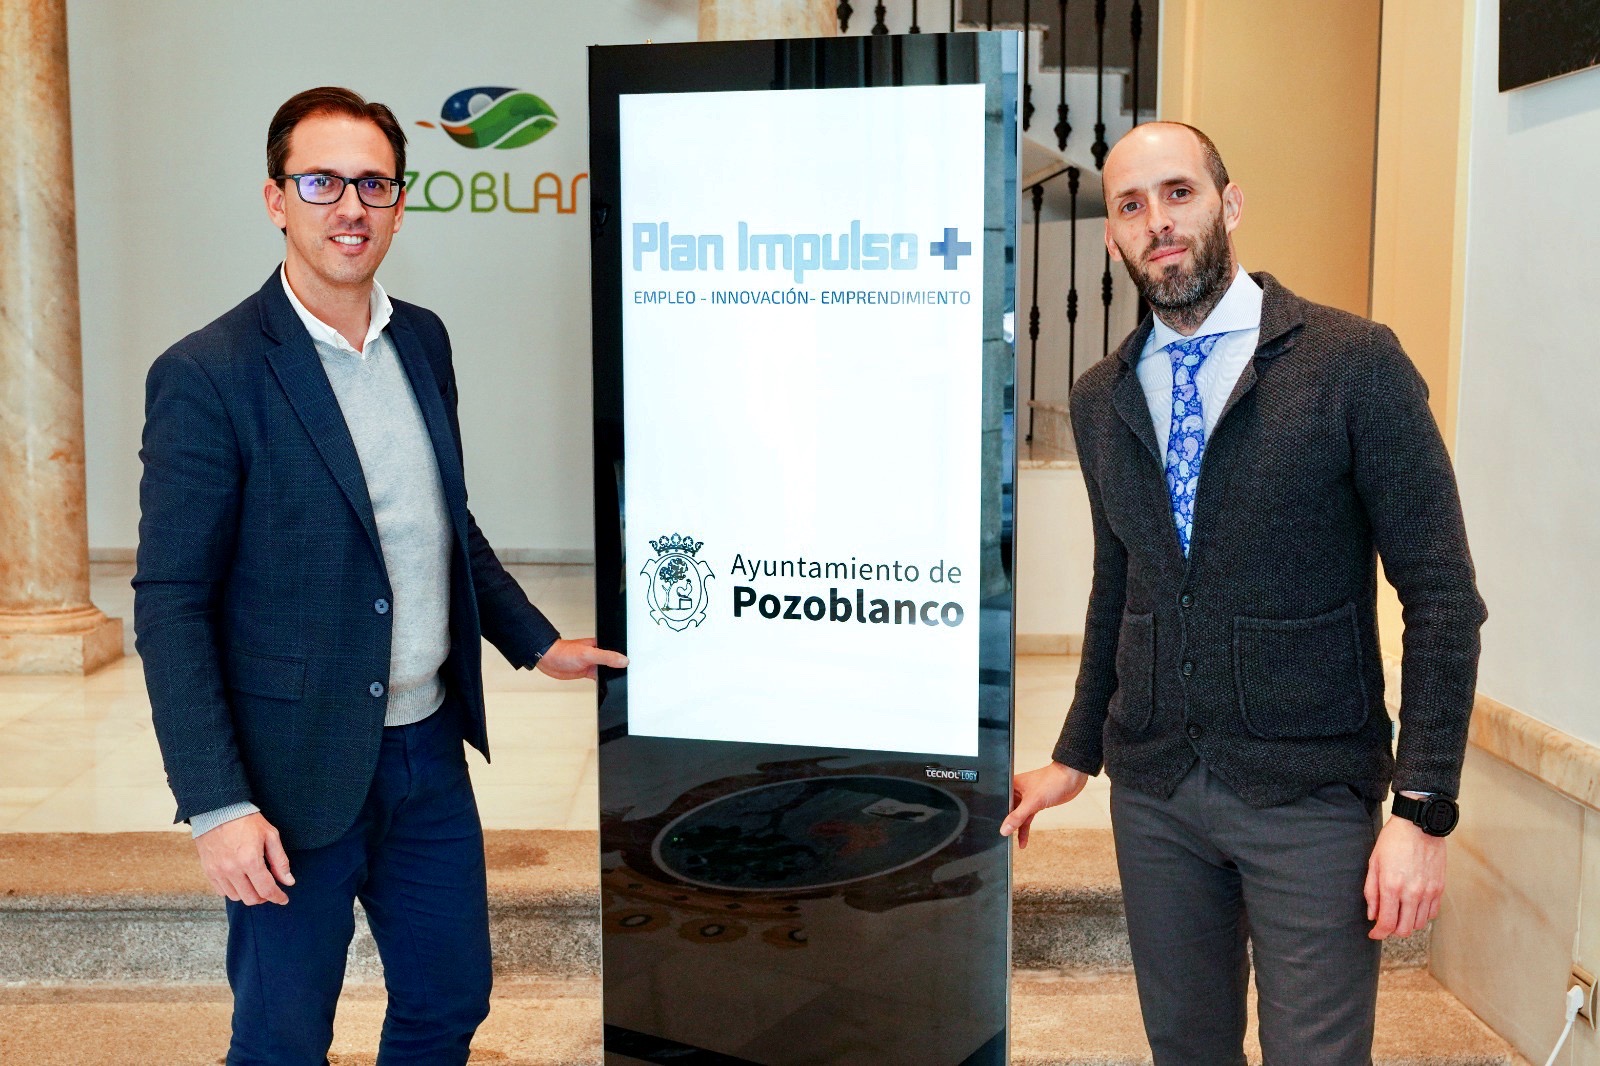 El Ayuntamiento de Pozoblanco inicia el Plan Impulso+ con ayudas a emprendedores, a la contratación y a la innovación 1